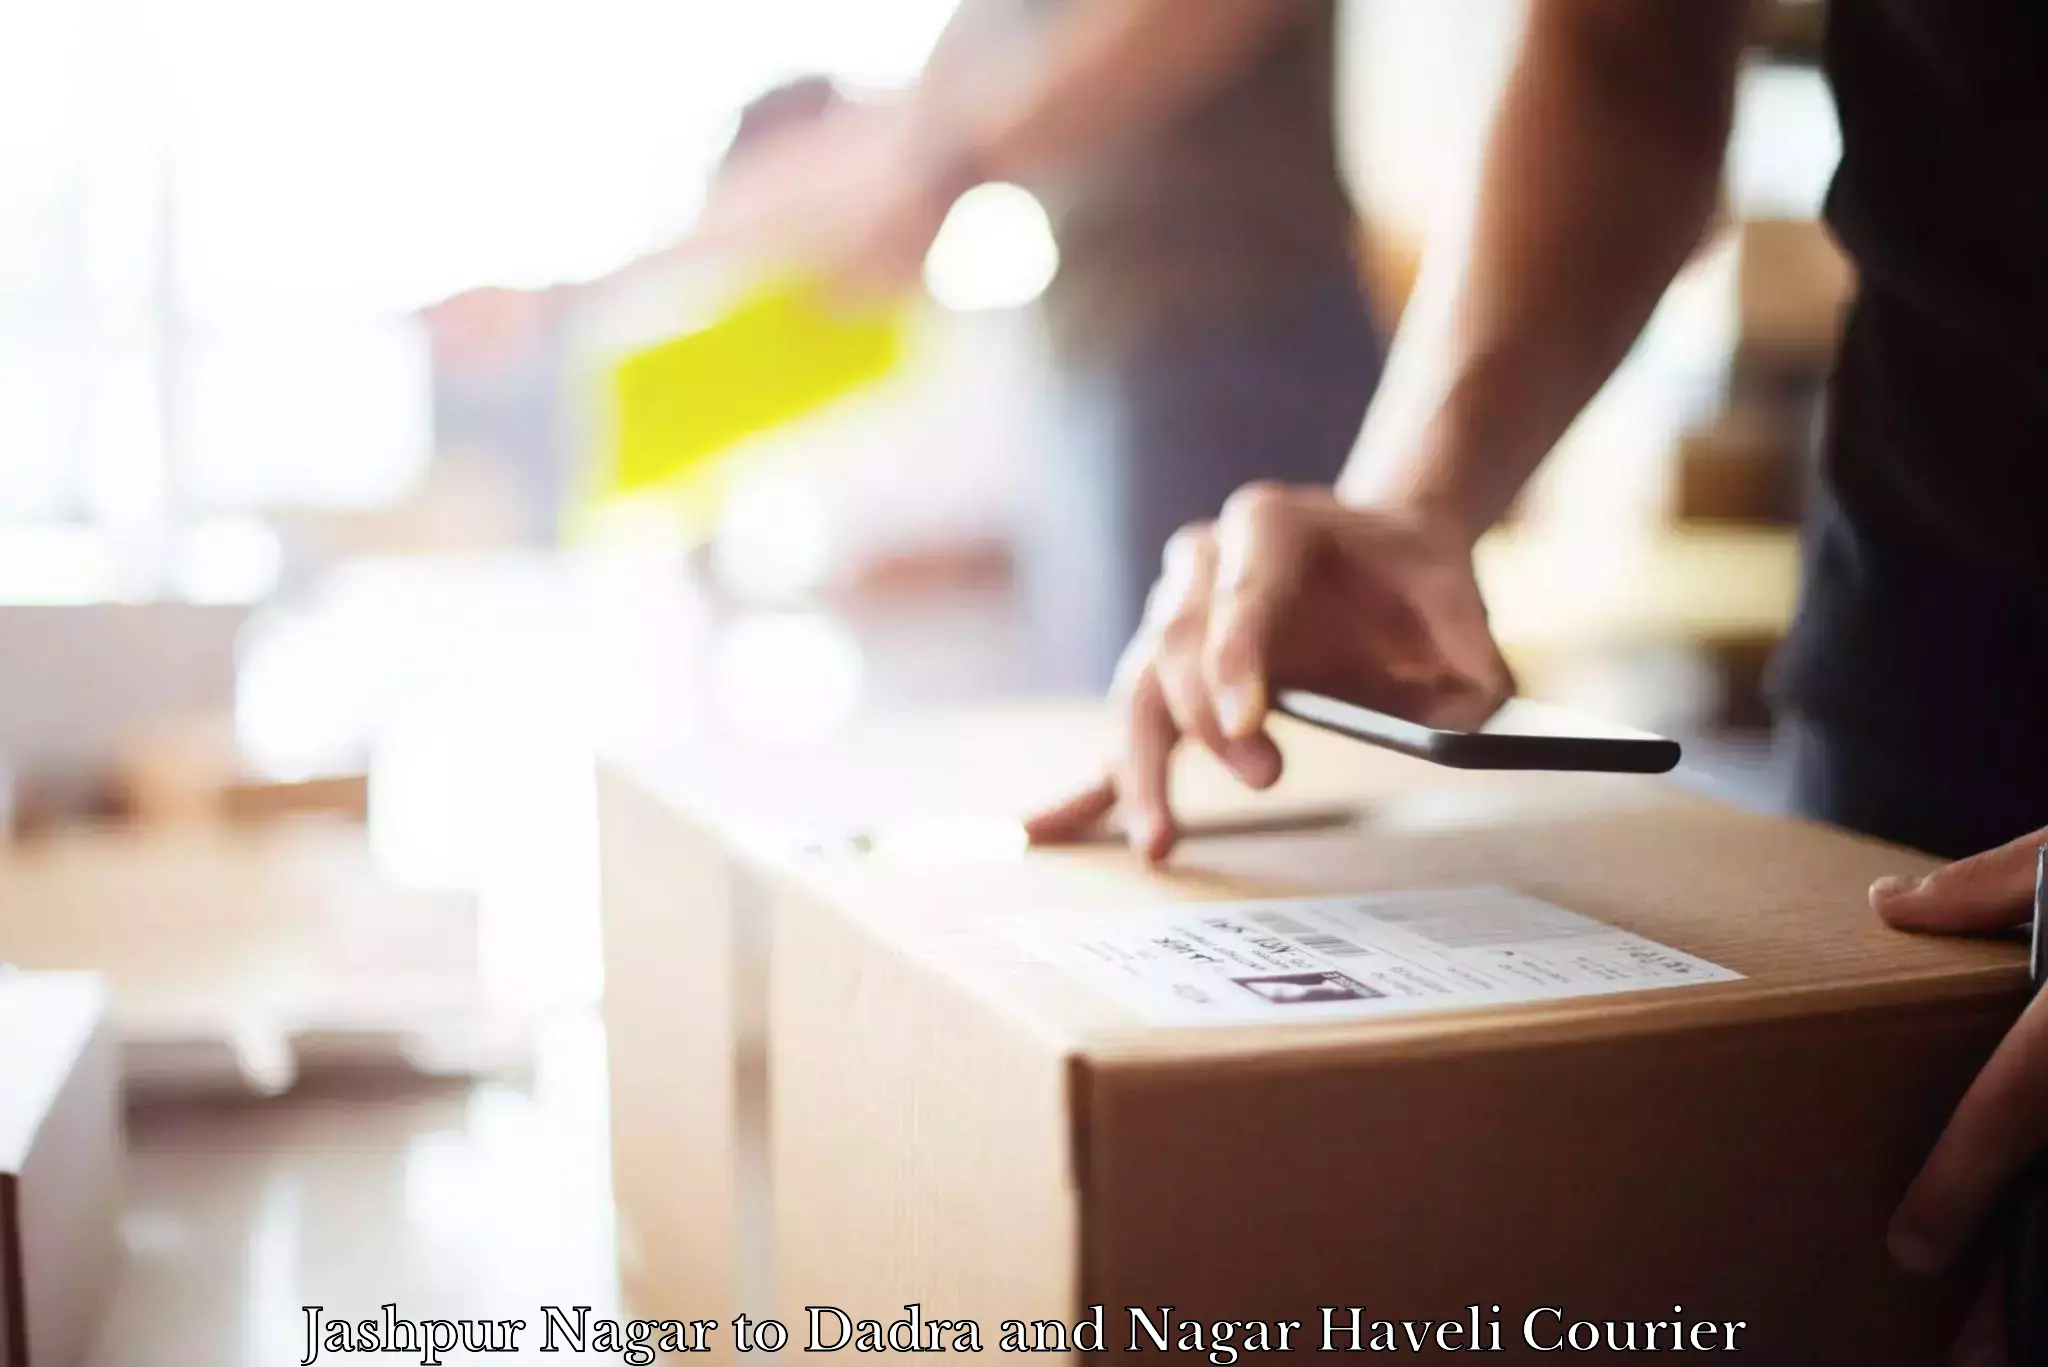 Affordable parcel service Jashpur Nagar to Dadra and Nagar Haveli